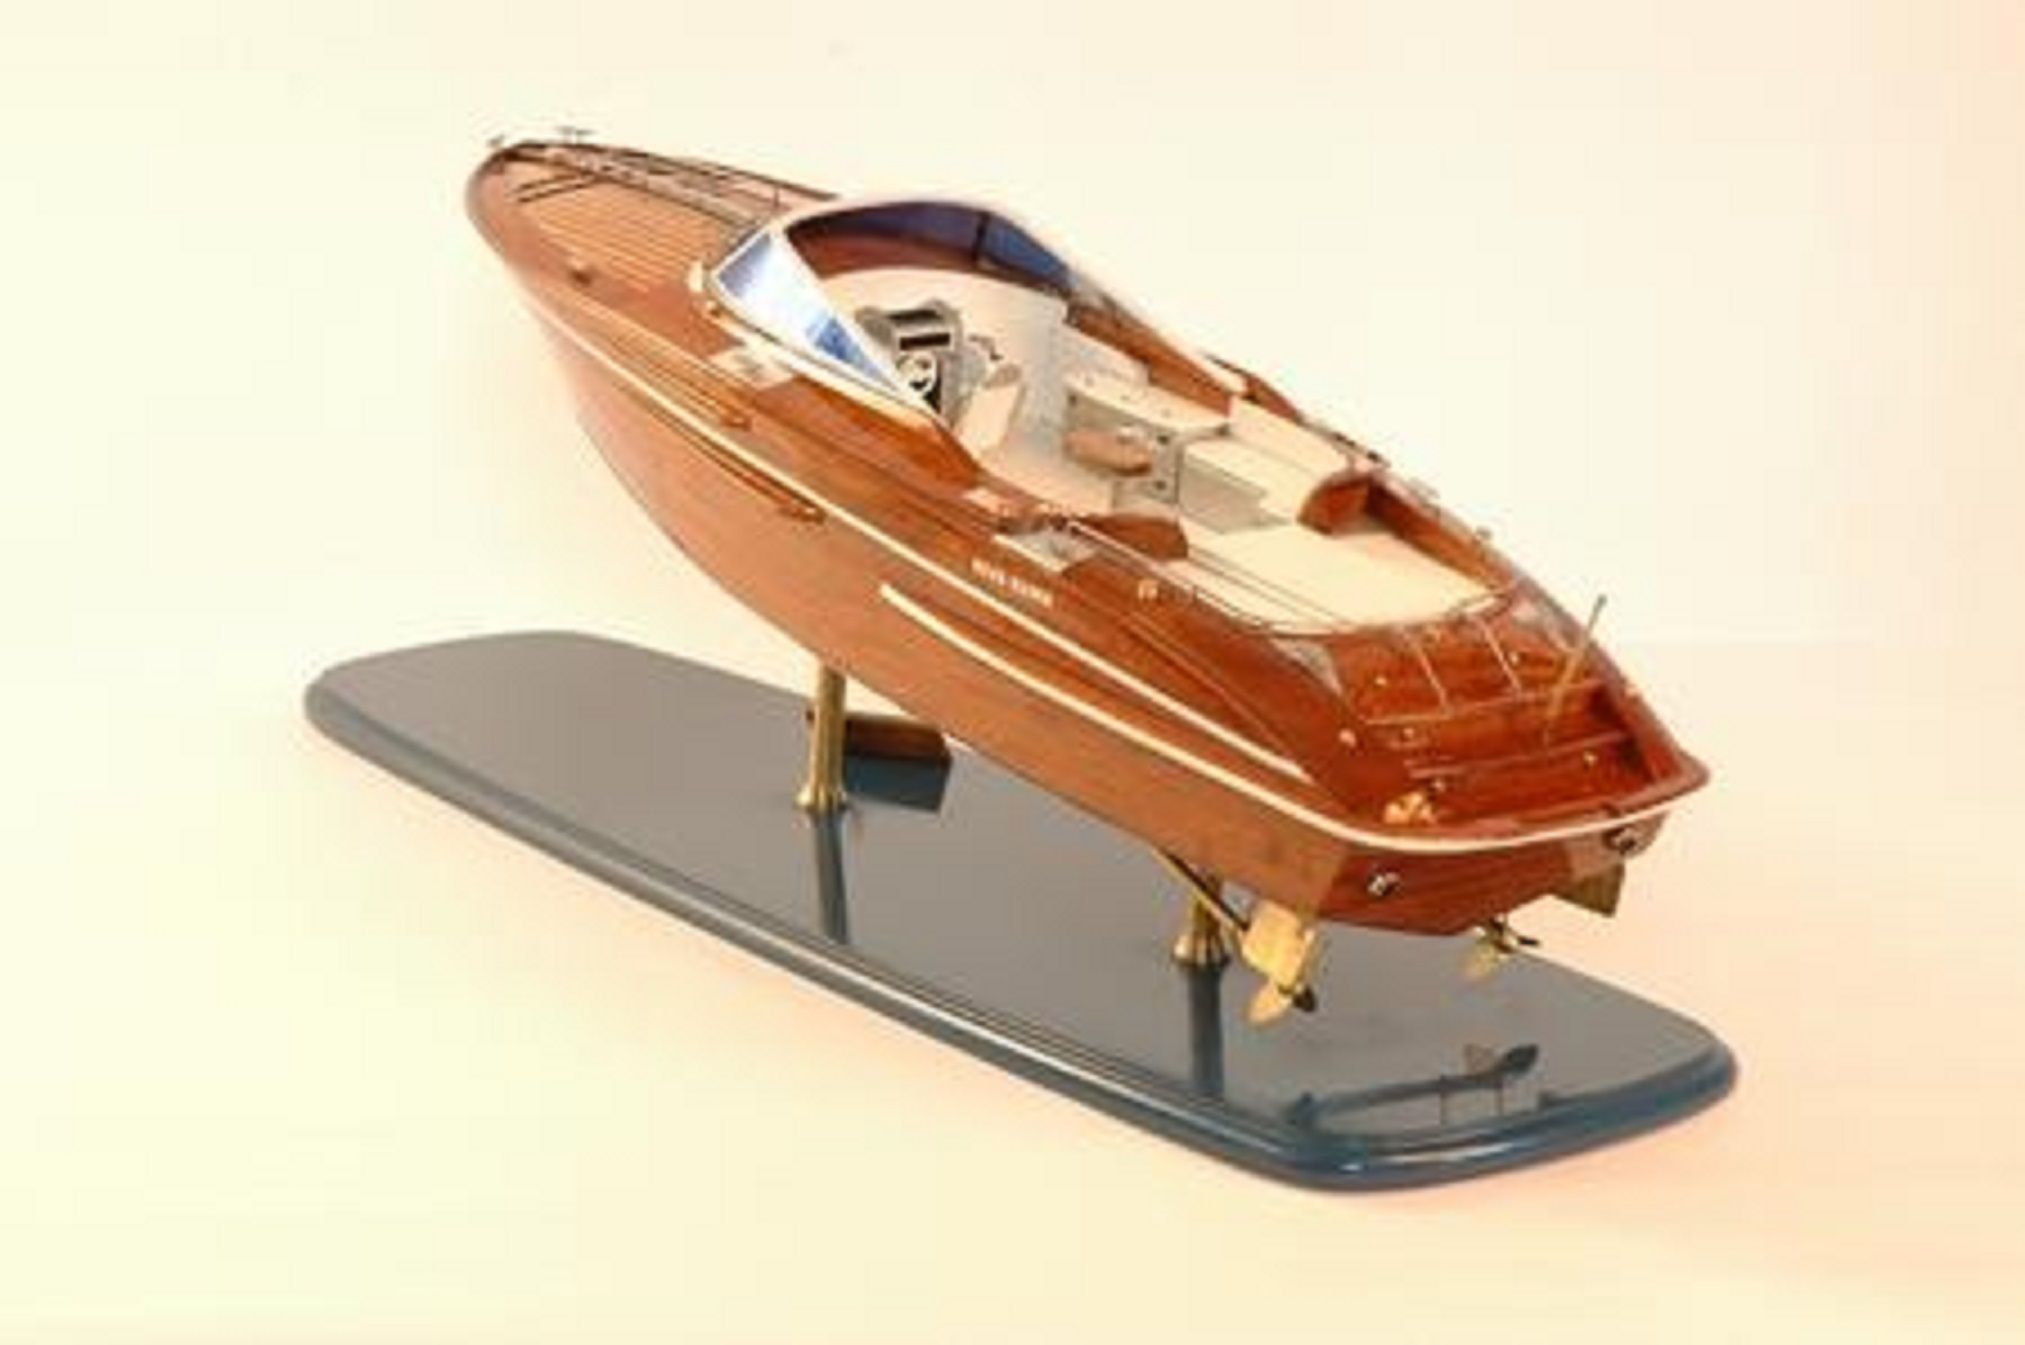 Riva Rama 44 model boat (Premier Range) - PSM